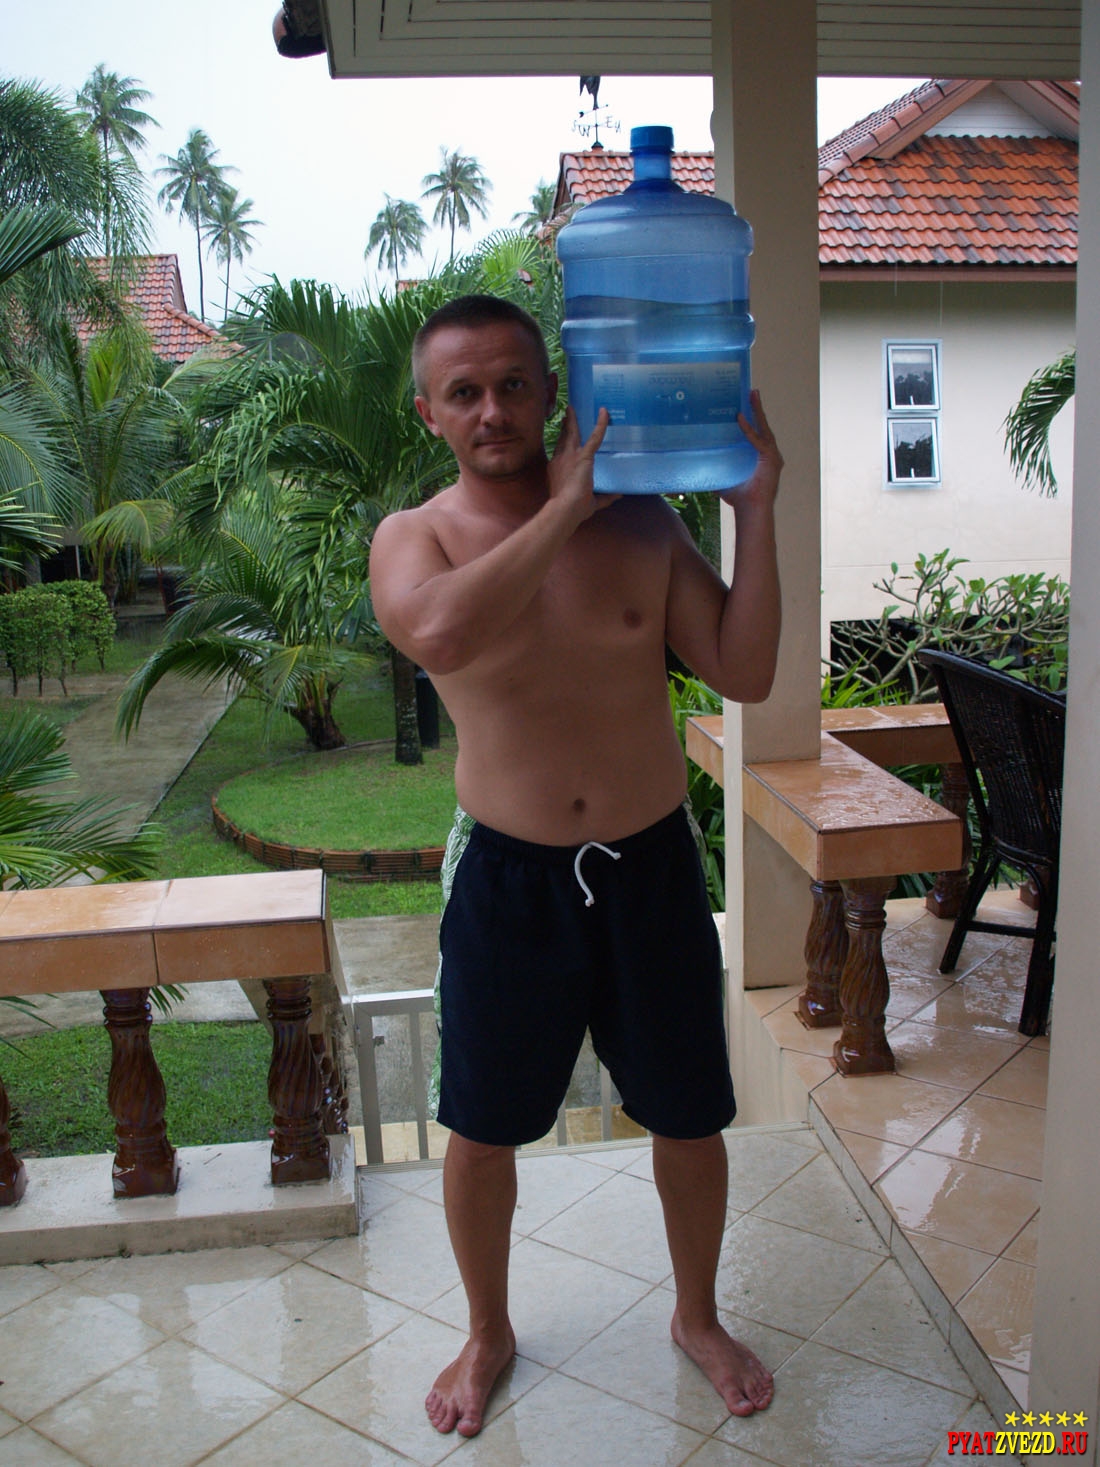 Доставка питьевой воды на дом